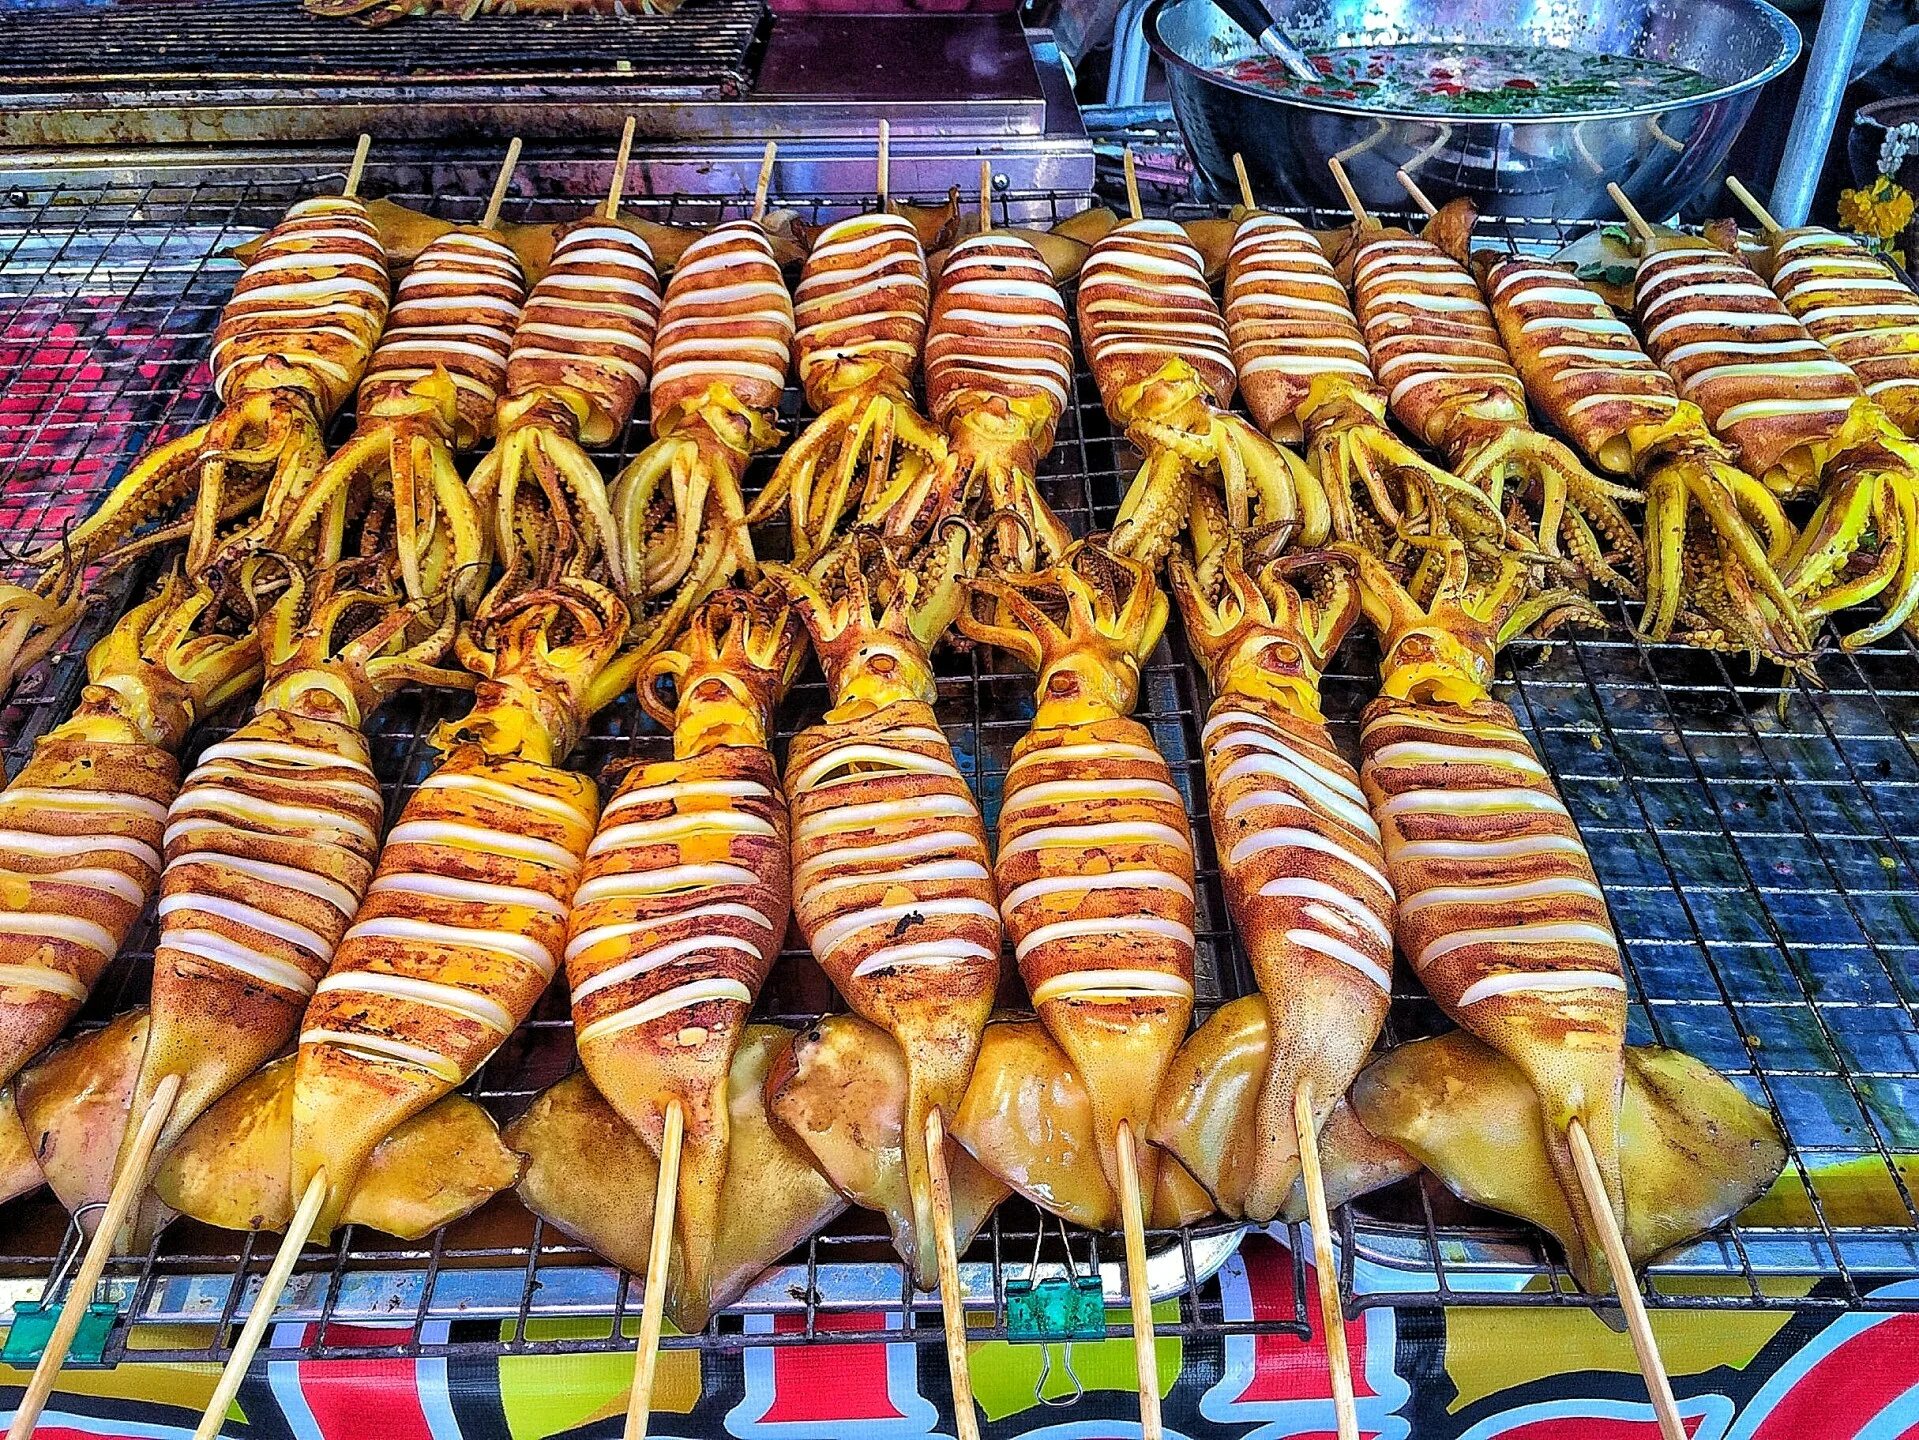 Thai streets. Стрит фуд Тайланд. Бангкок стрит фуд. Бангкок уличная еда. Тайланд блюда стрит фуд.